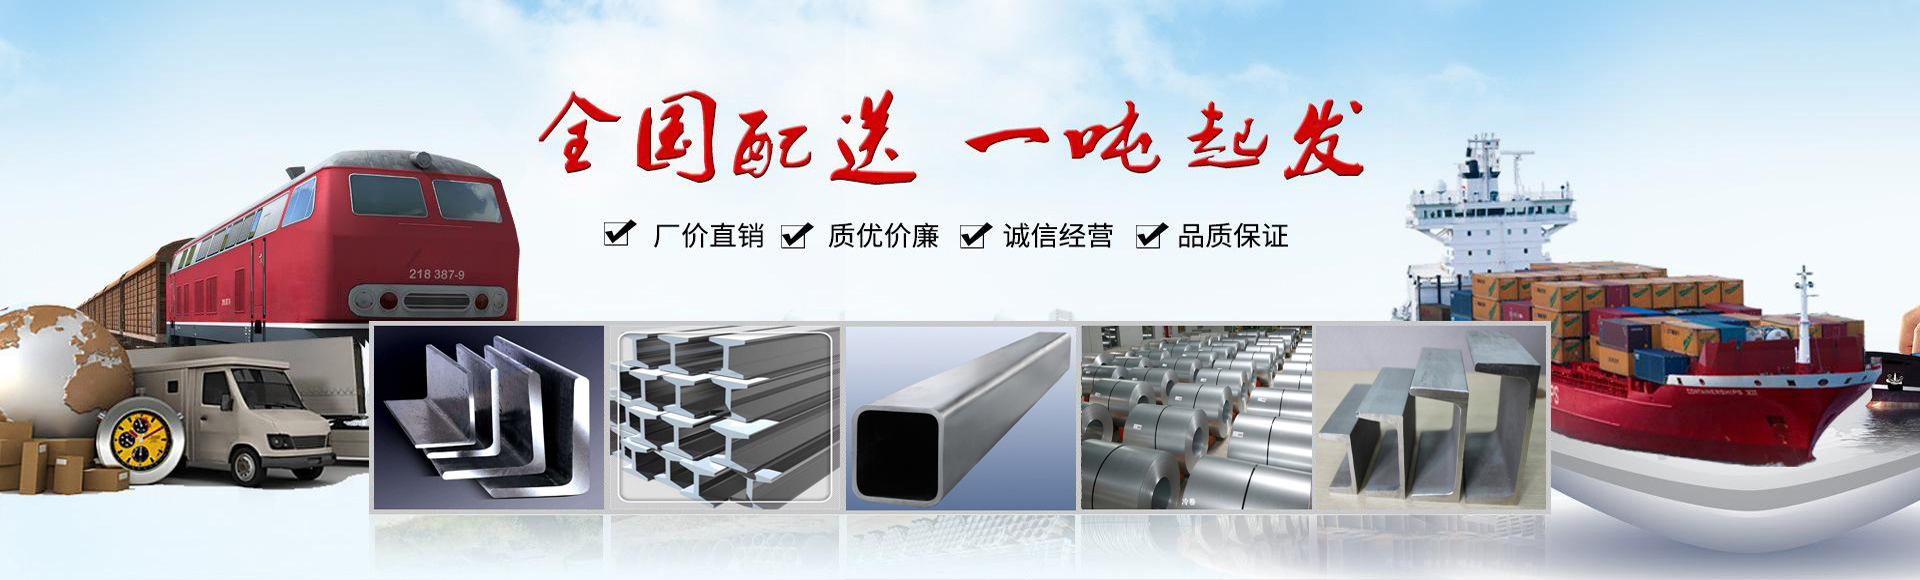 铝板、钢板、金属材料配送服务商-上海凰天实业有限公司